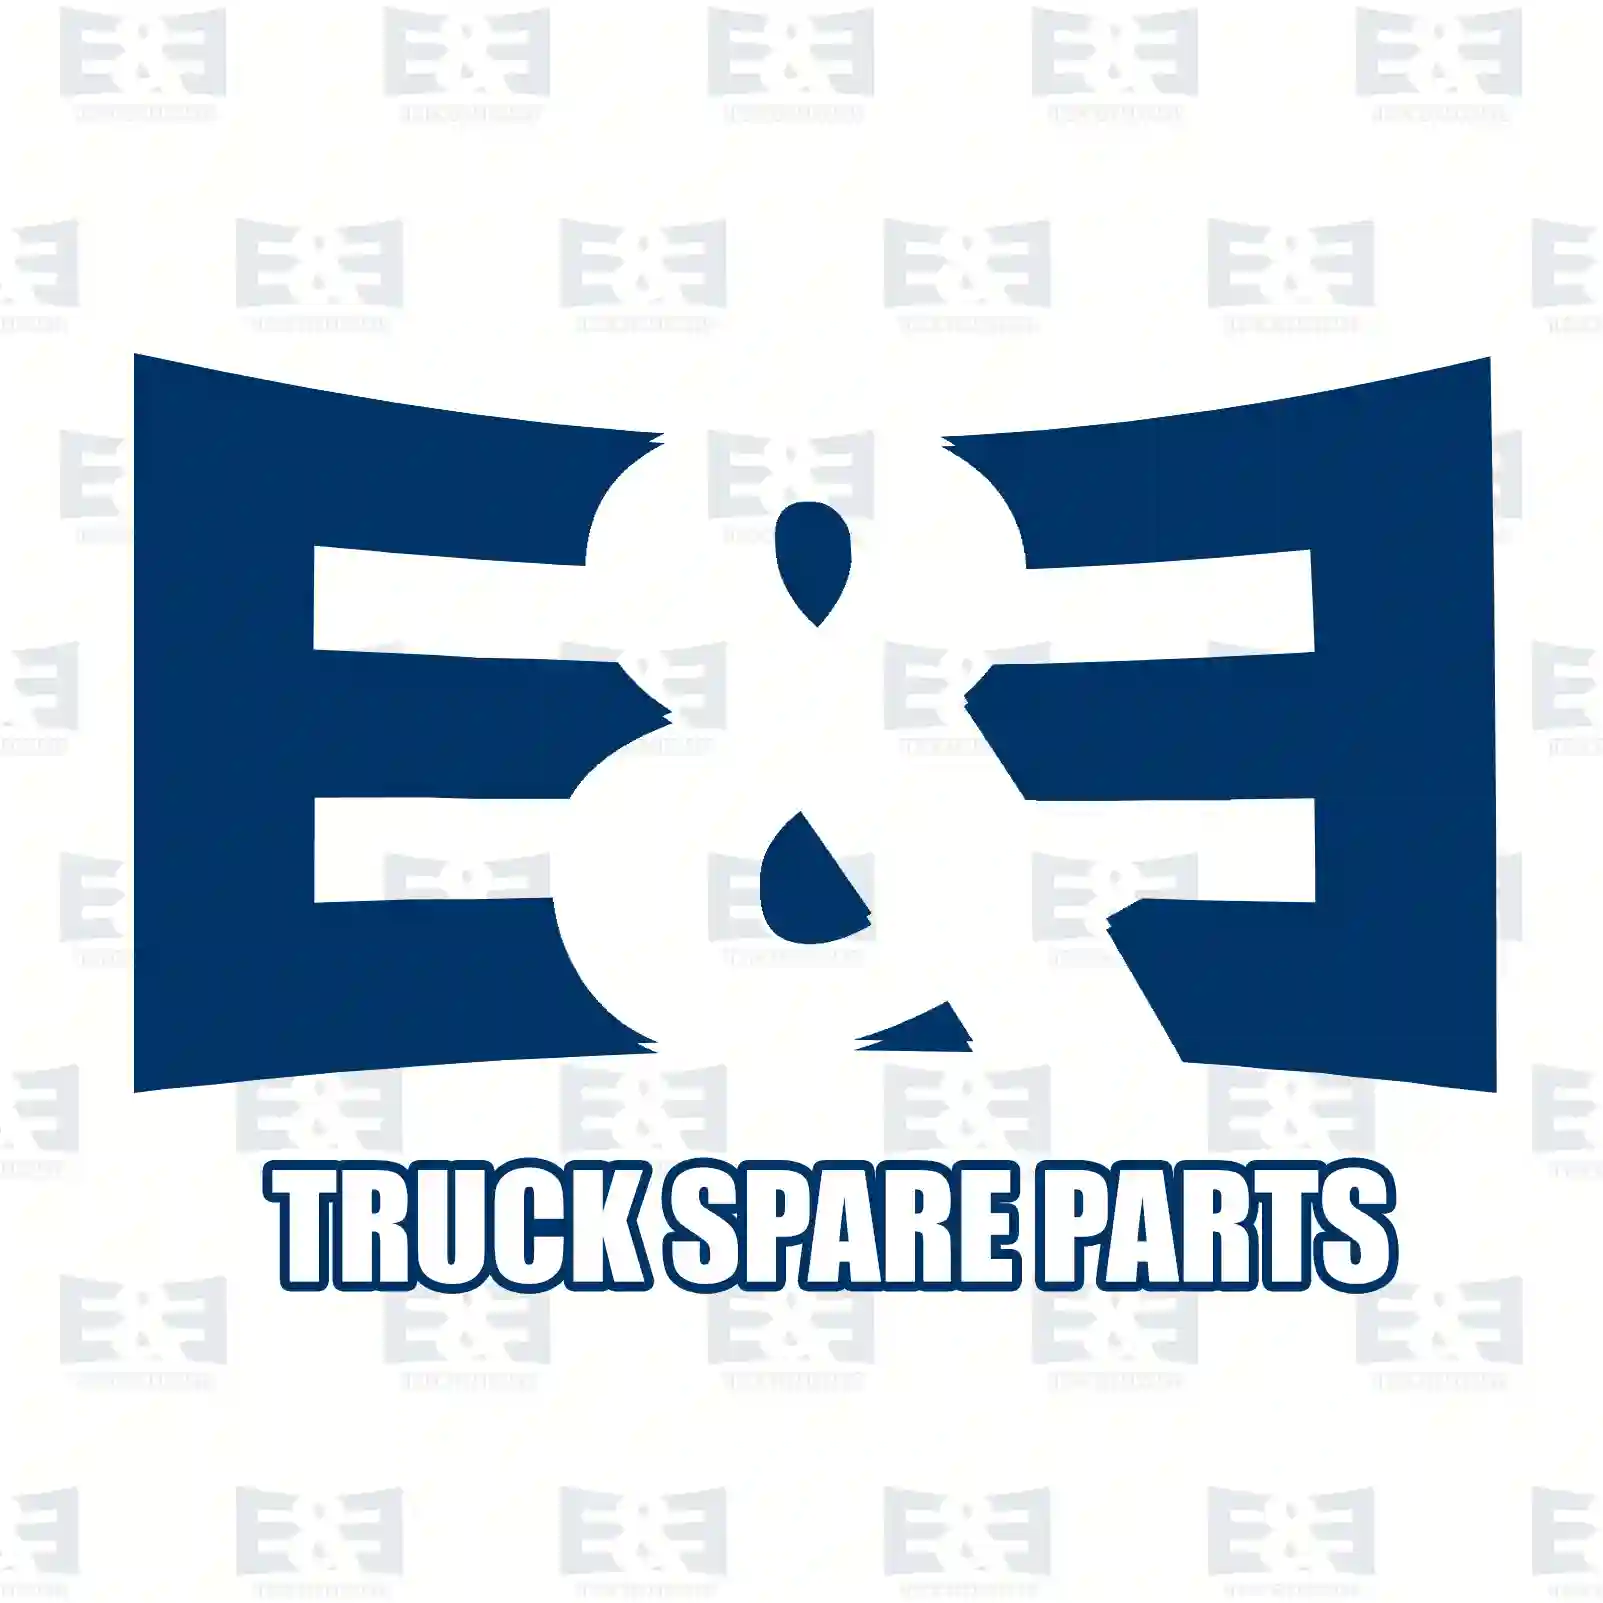 Wiper linkage, 2E2280099, 1440031, 1441296, 1603689 ||  2E2280099 E&E Truck Spare Parts | Truck Spare Parts, Auotomotive Spare Parts Wiper linkage, 2E2280099, 1440031, 1441296, 1603689 ||  2E2280099 E&E Truck Spare Parts | Truck Spare Parts, Auotomotive Spare Parts